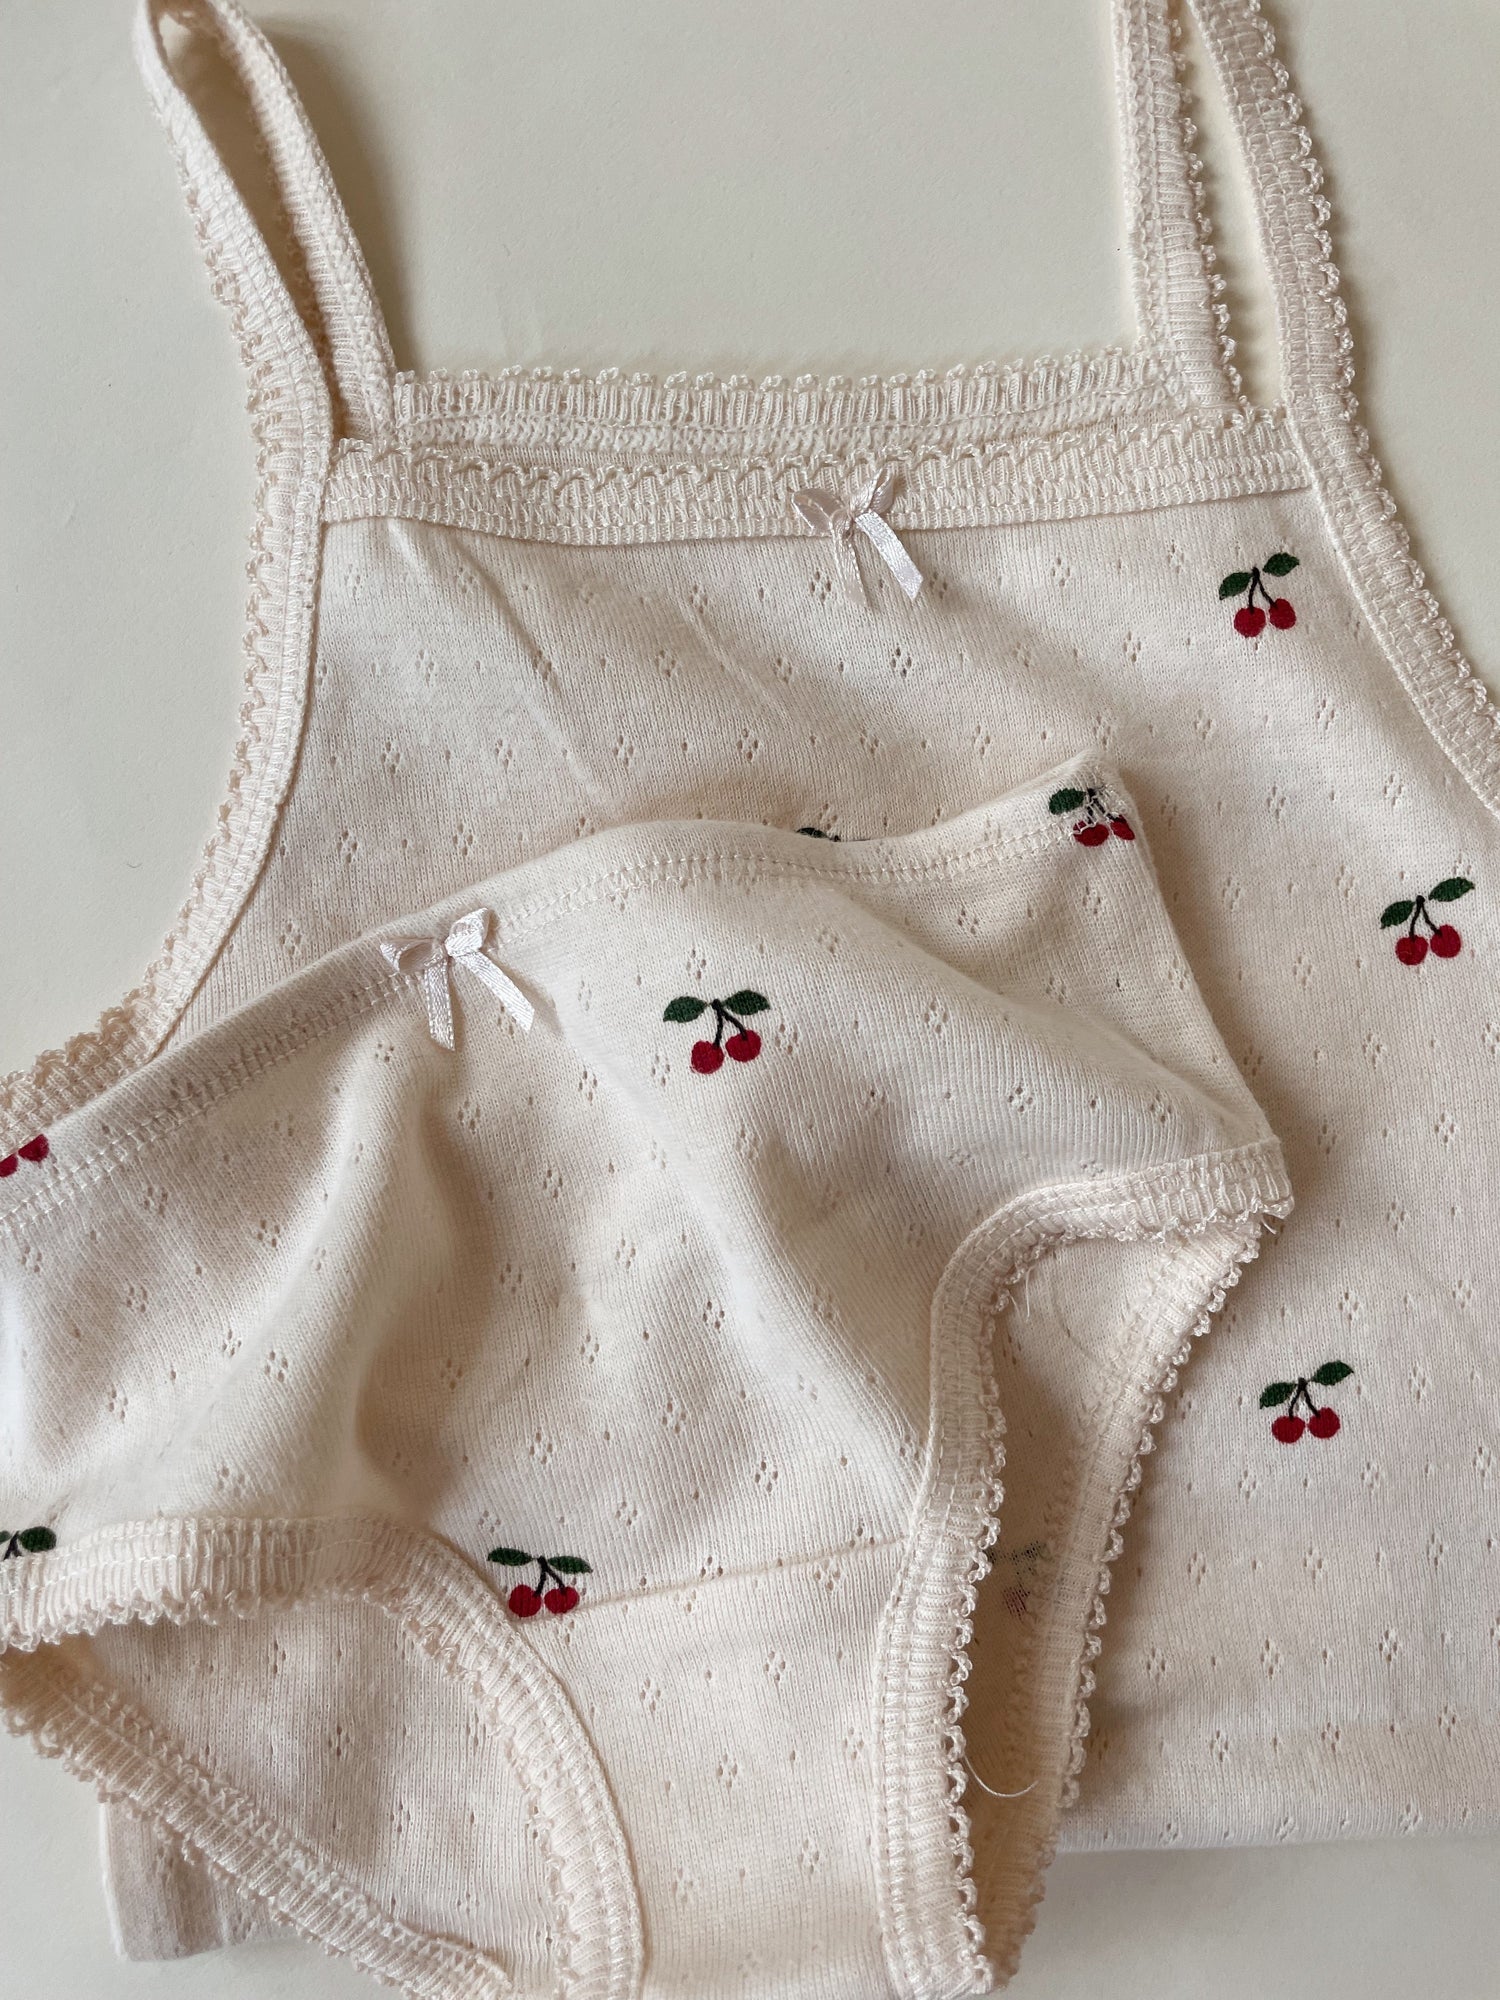 Minnie Organic Cotton Underwear GOTS Hearts Printed